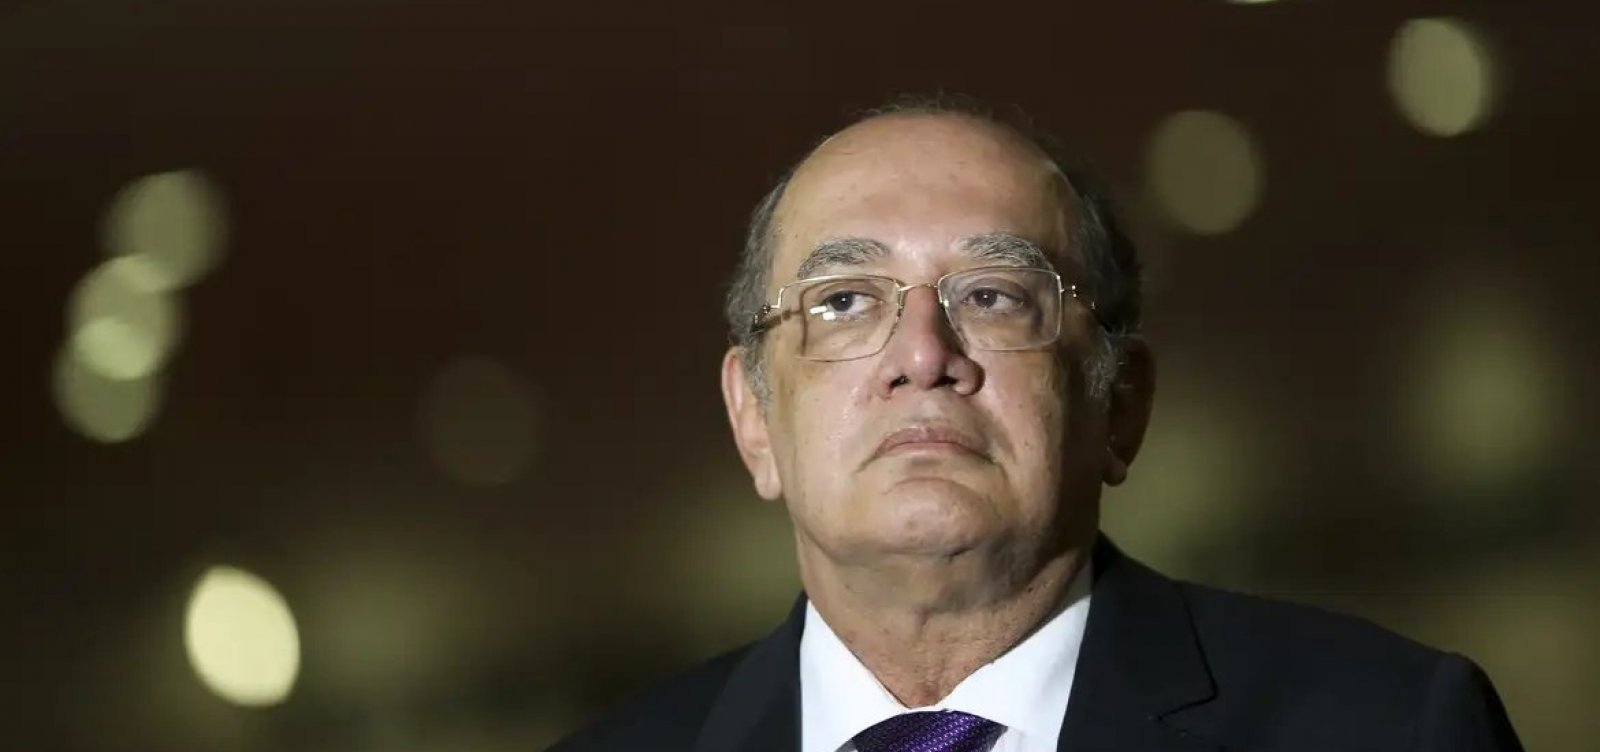 Grupo de advogados celebra decisão de Gilmar Mendes em trancar ação de Bolsonaro contra jornalista